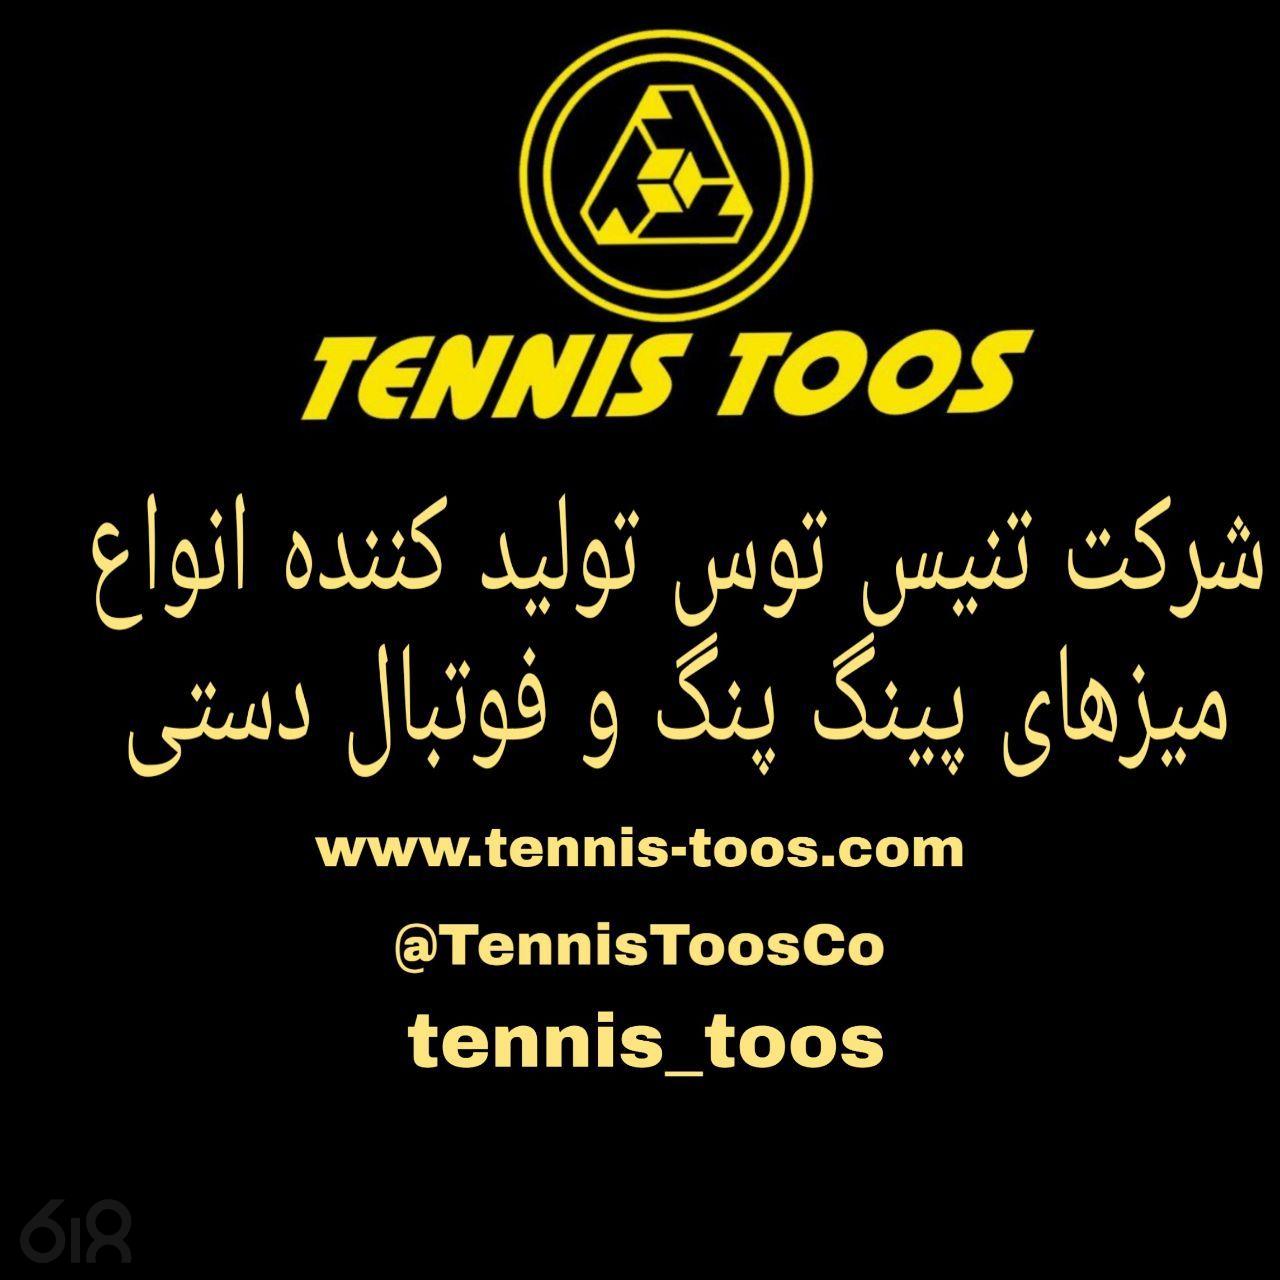 تولید صنایع ورزشی تنیس توس،تولید صنایع ورزشی تنیس توس مشهد